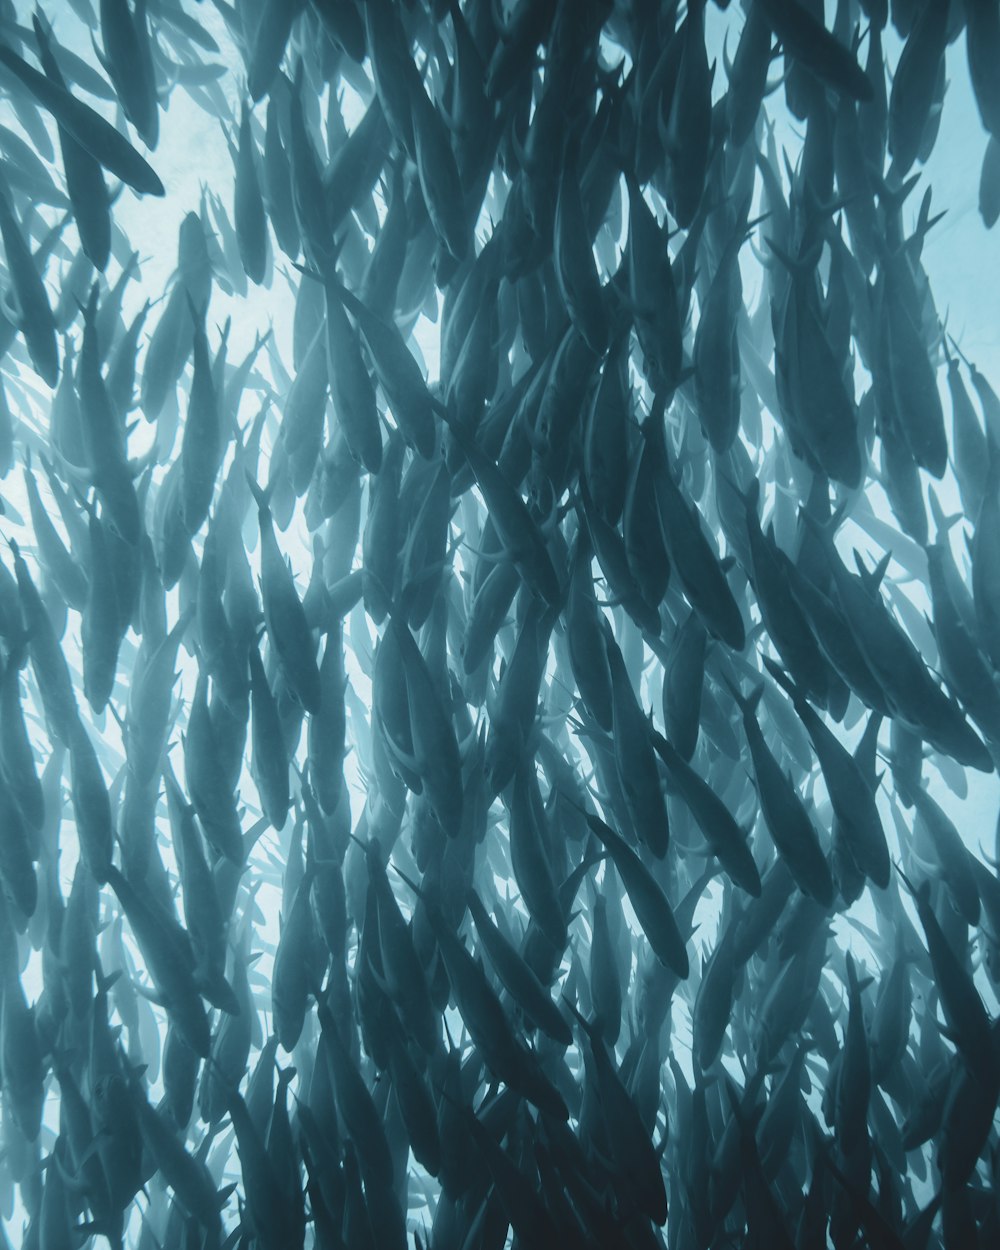 Un grande gruppo di pesci che nuotano in uno specchio d'acqua